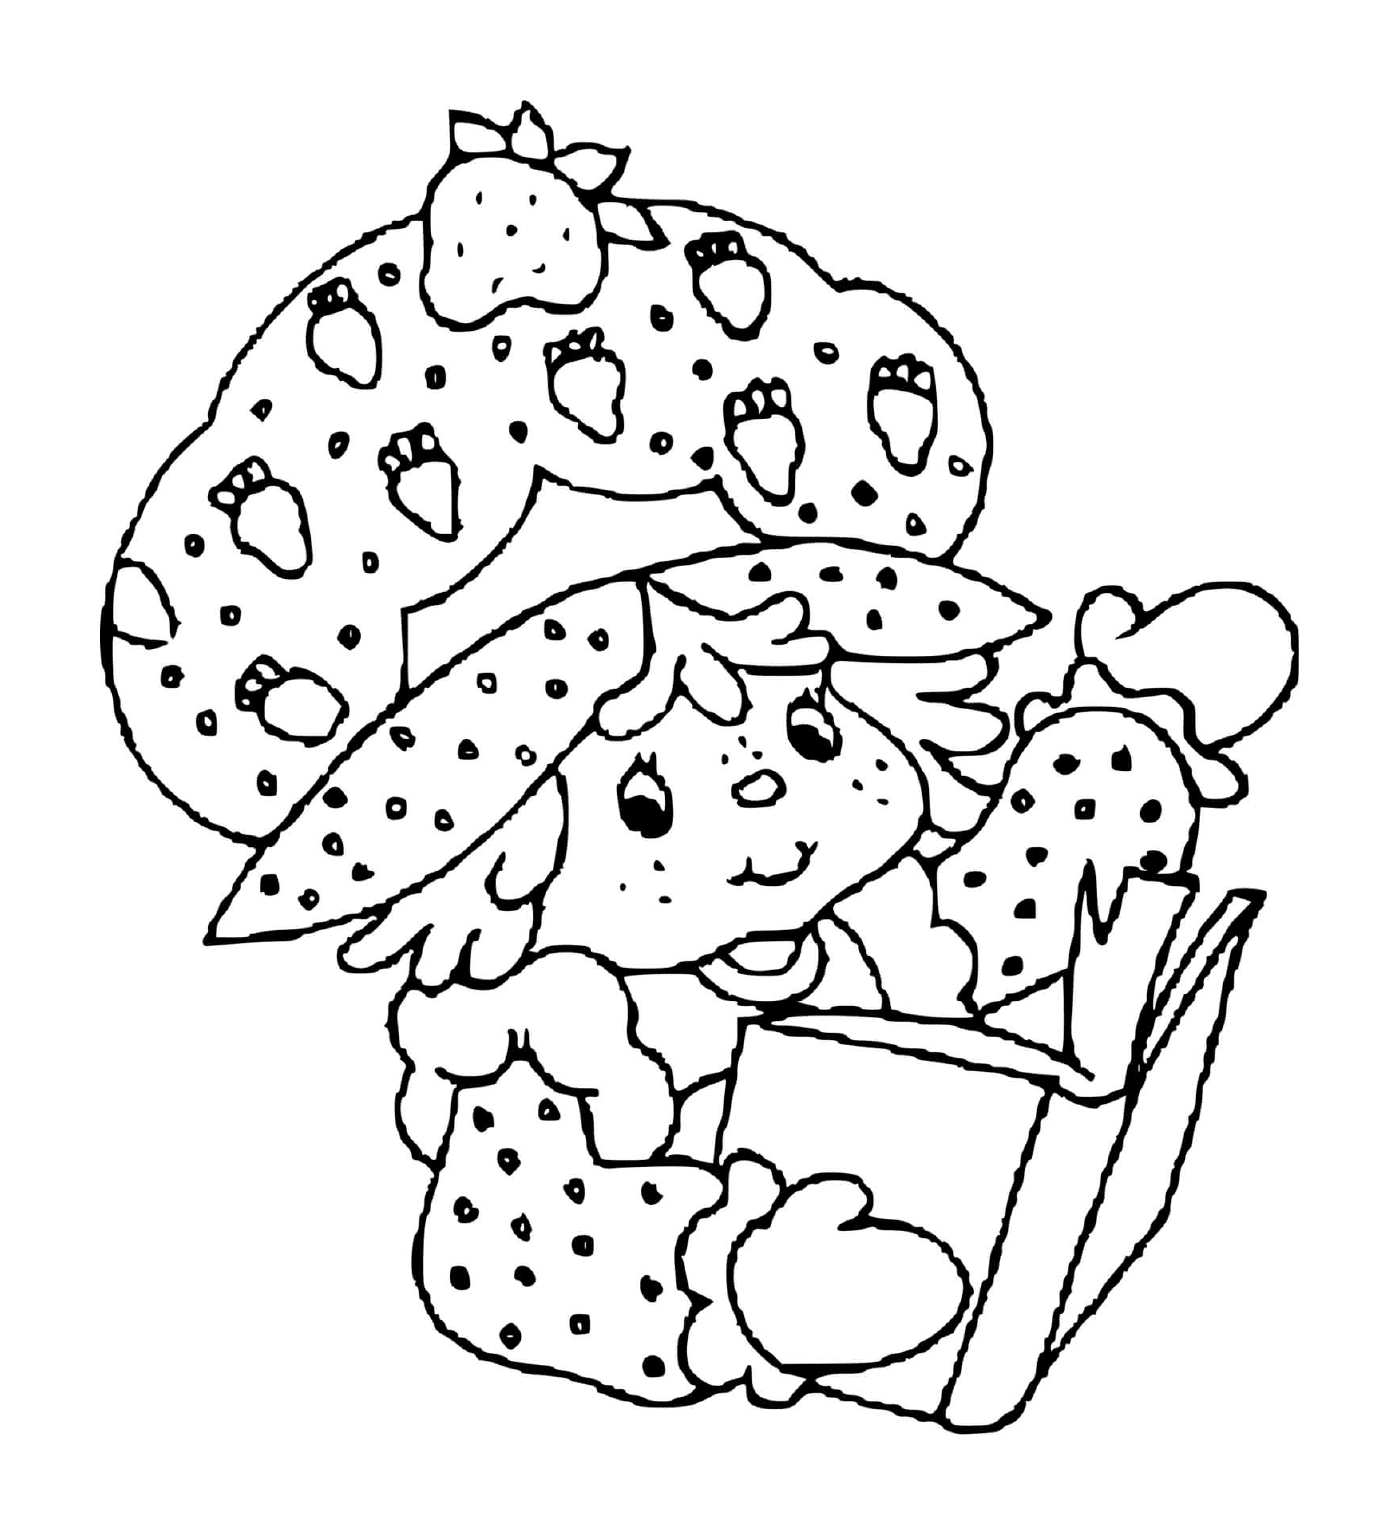 Charlotte aux fraises lit un livre